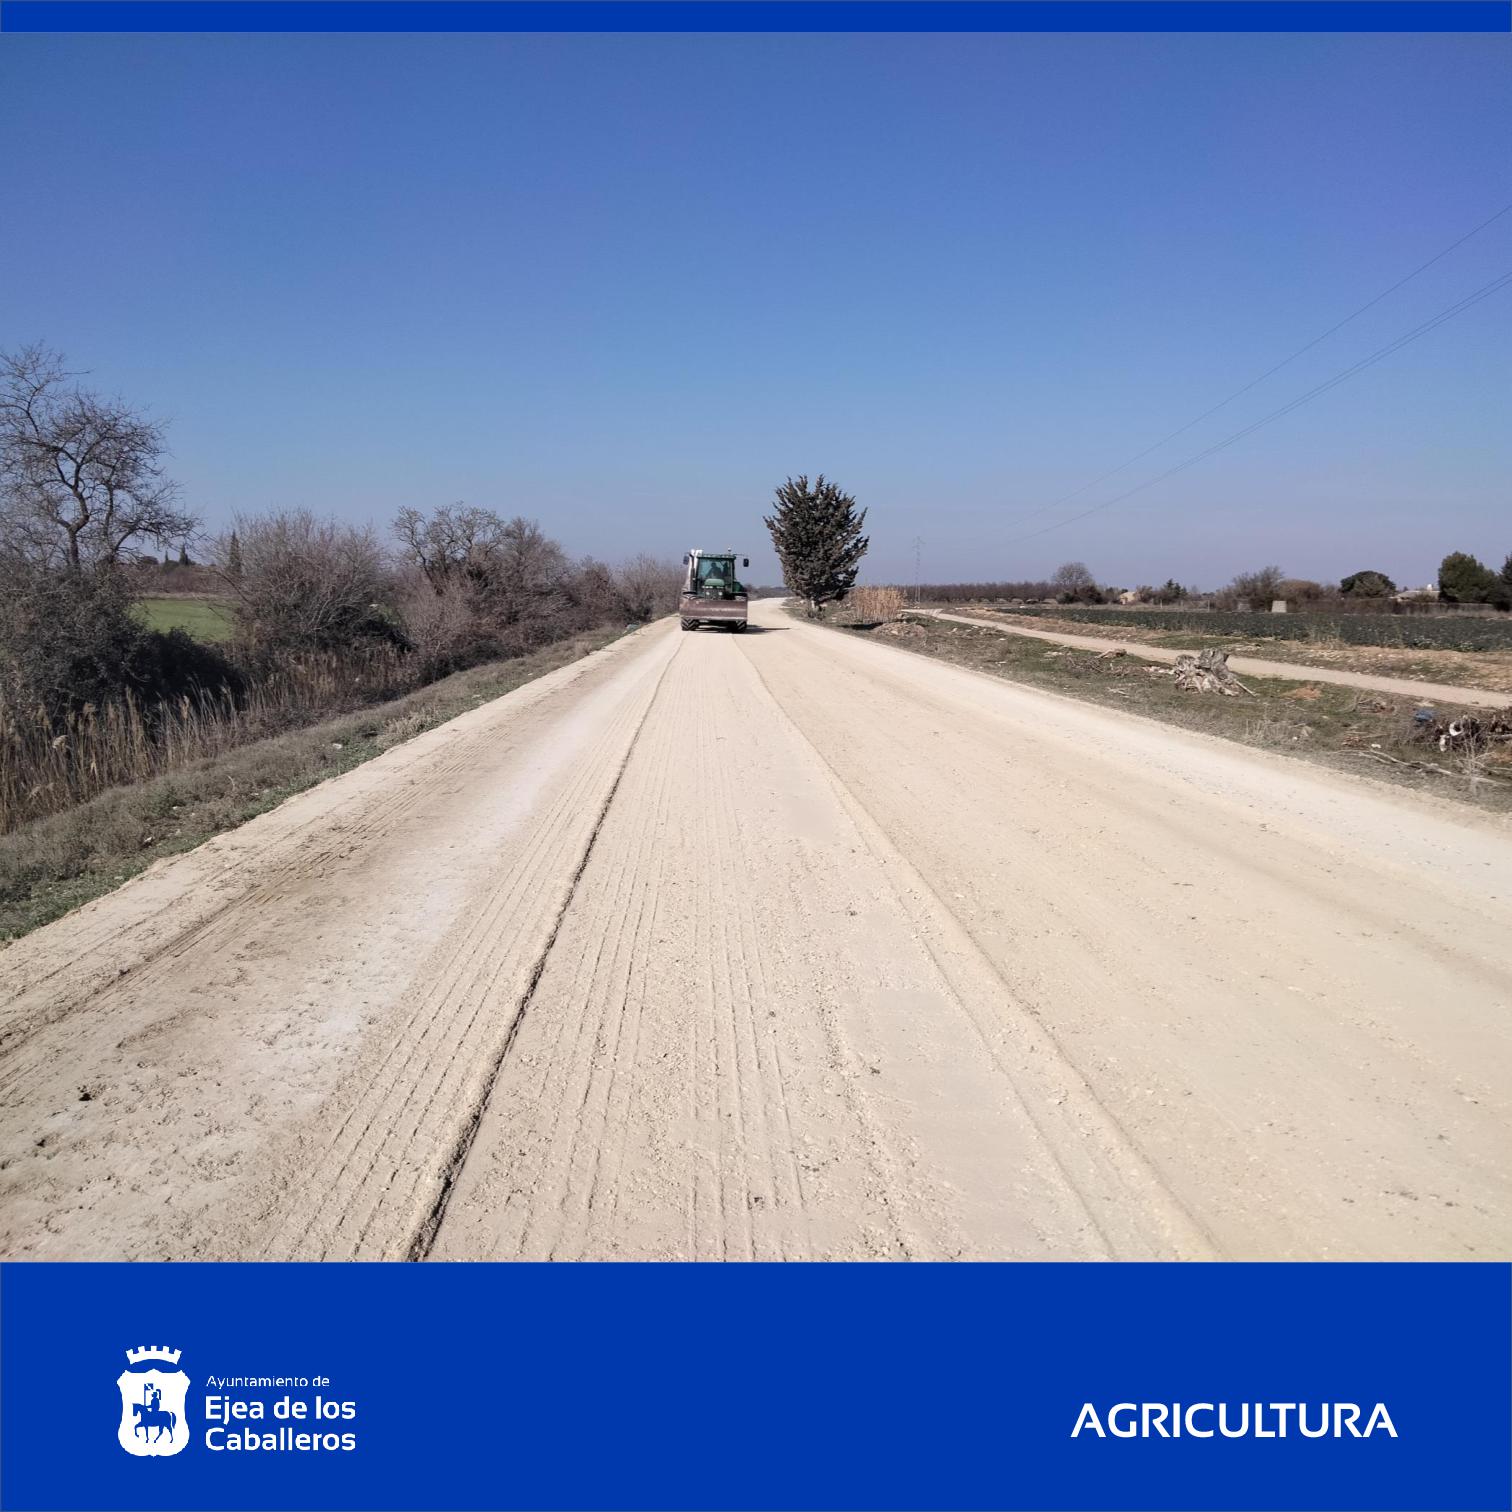 En este momento estás viendo Continúan los trabajos de mantenimiento de caminos rurales en Ejea